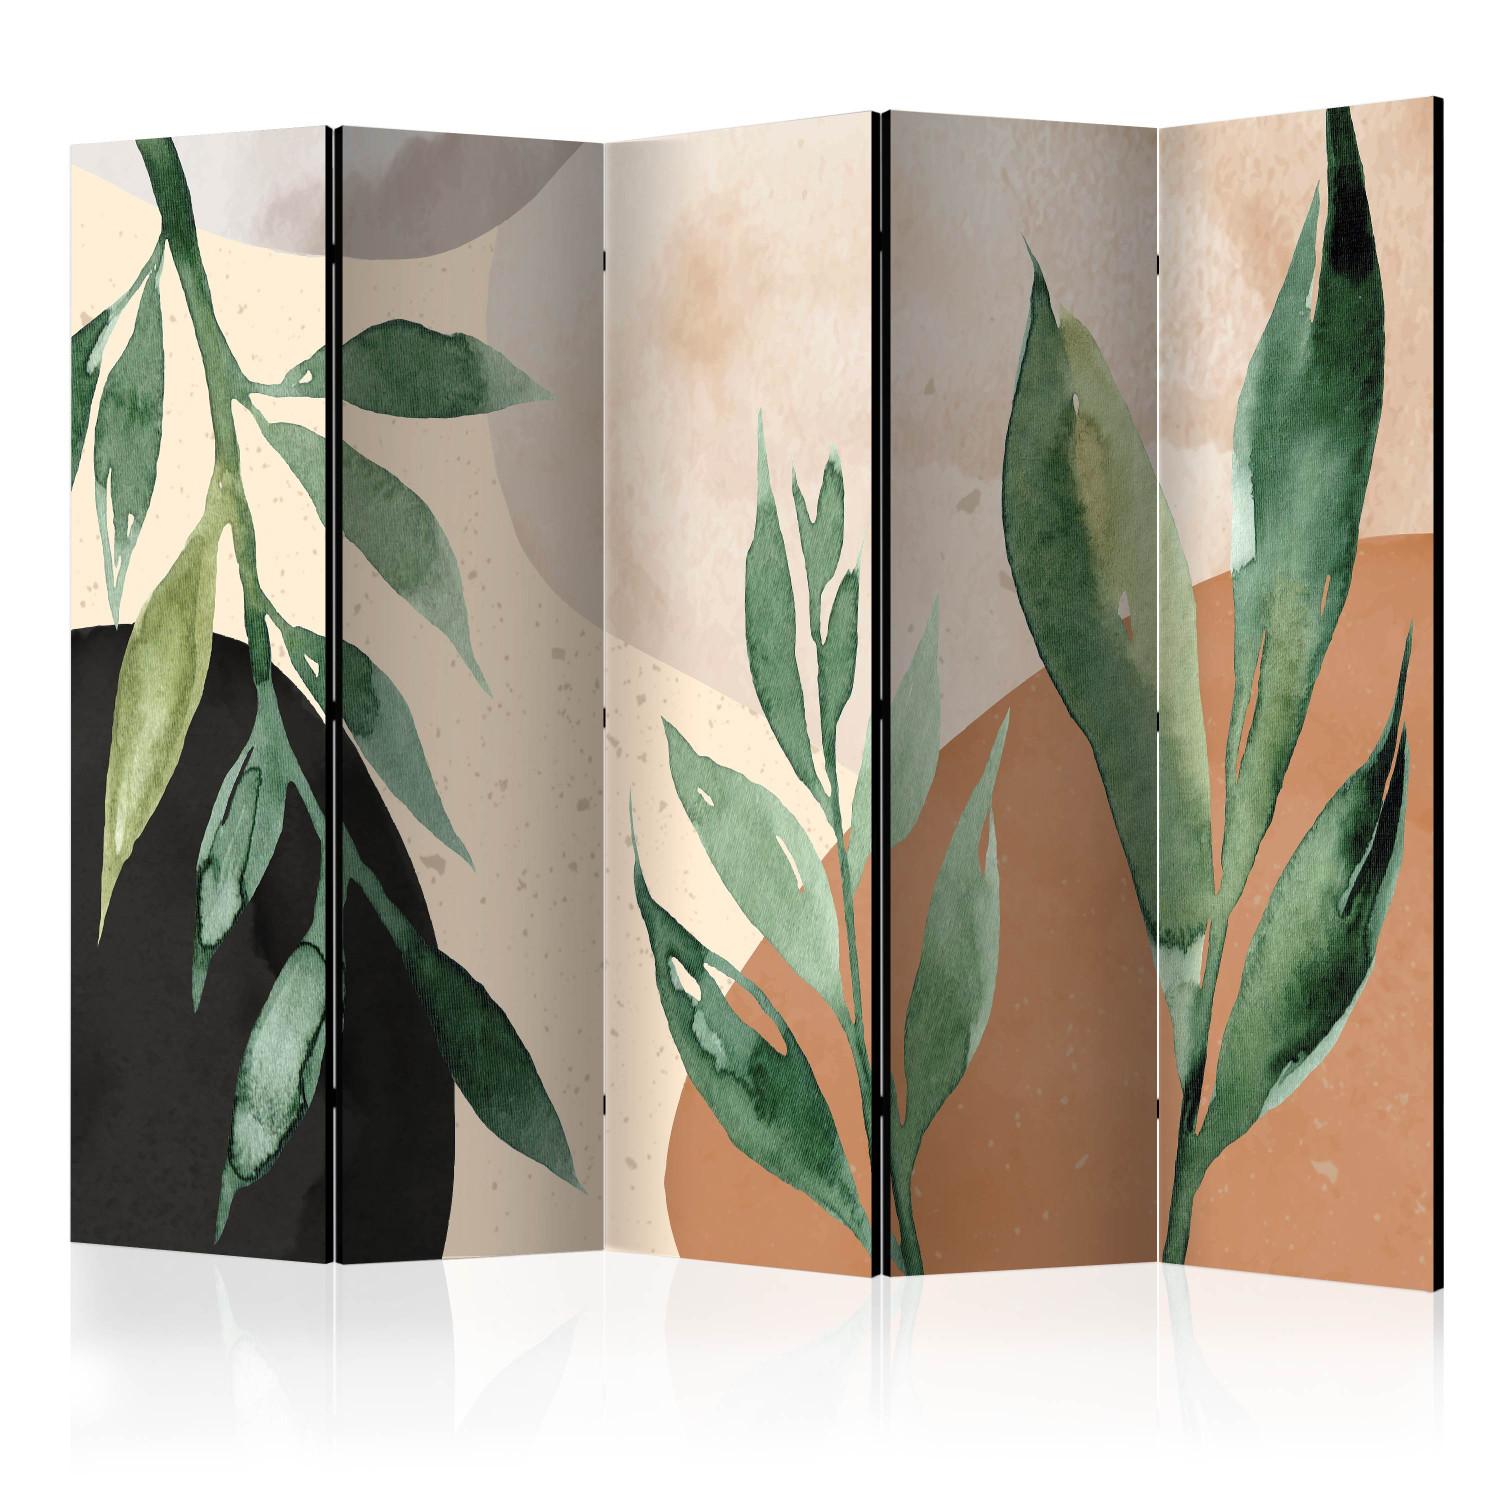 Biombo original Armonía natural II (5 piezas) - hojas verdes en tonos cálidos